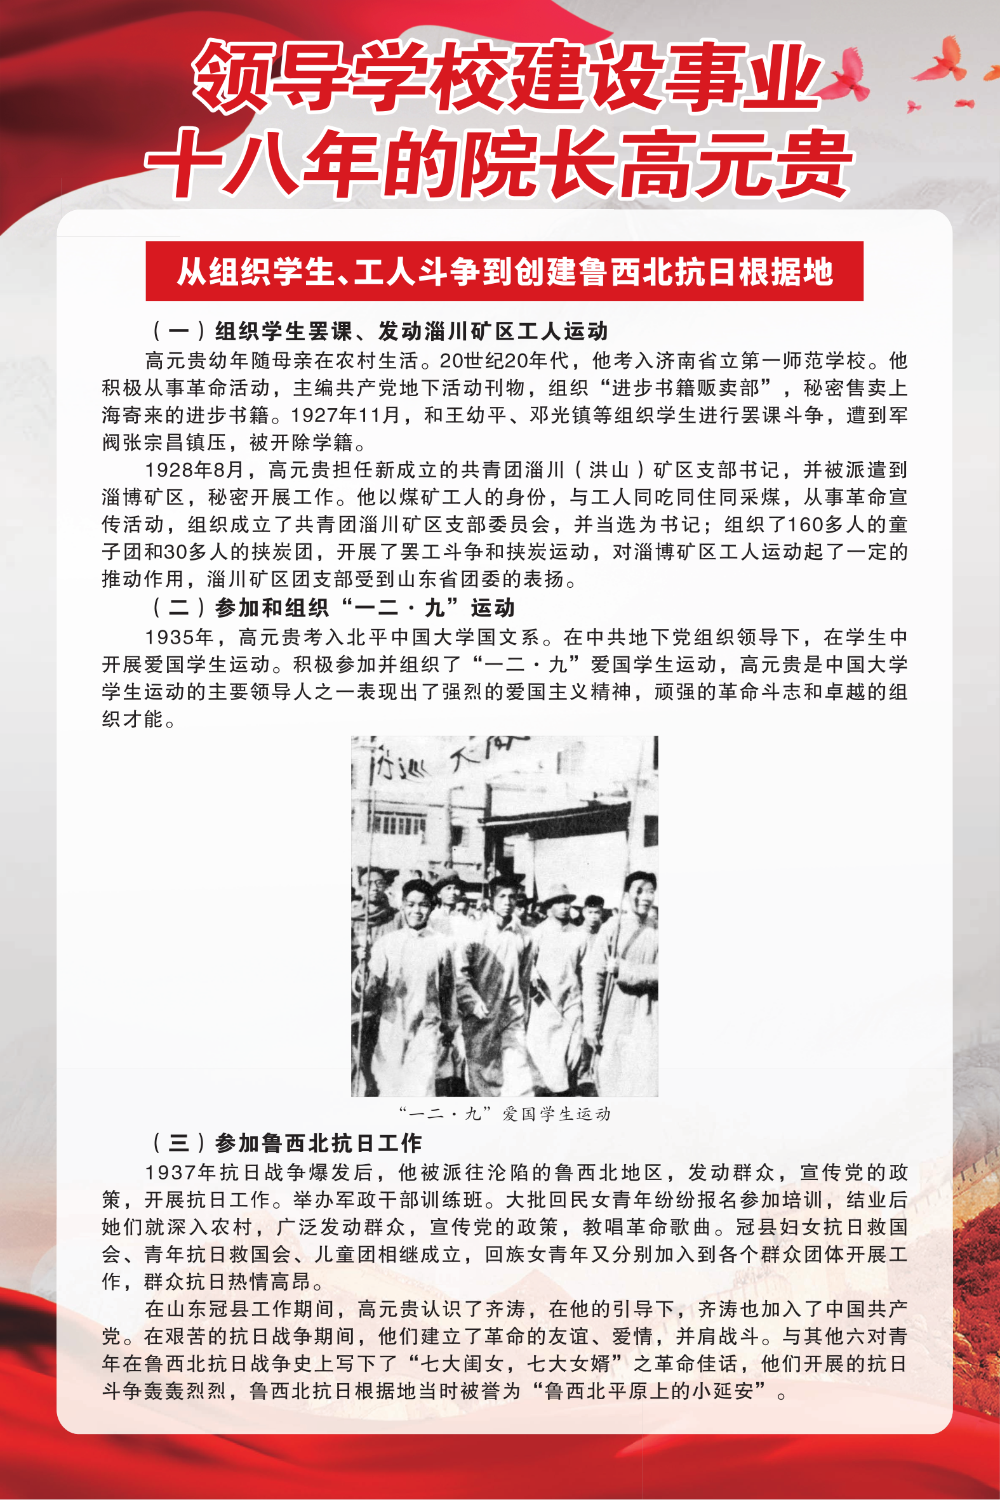 5鲁西北抗日根据地创建、北京地质学院院长兼第一书记高元贵_2